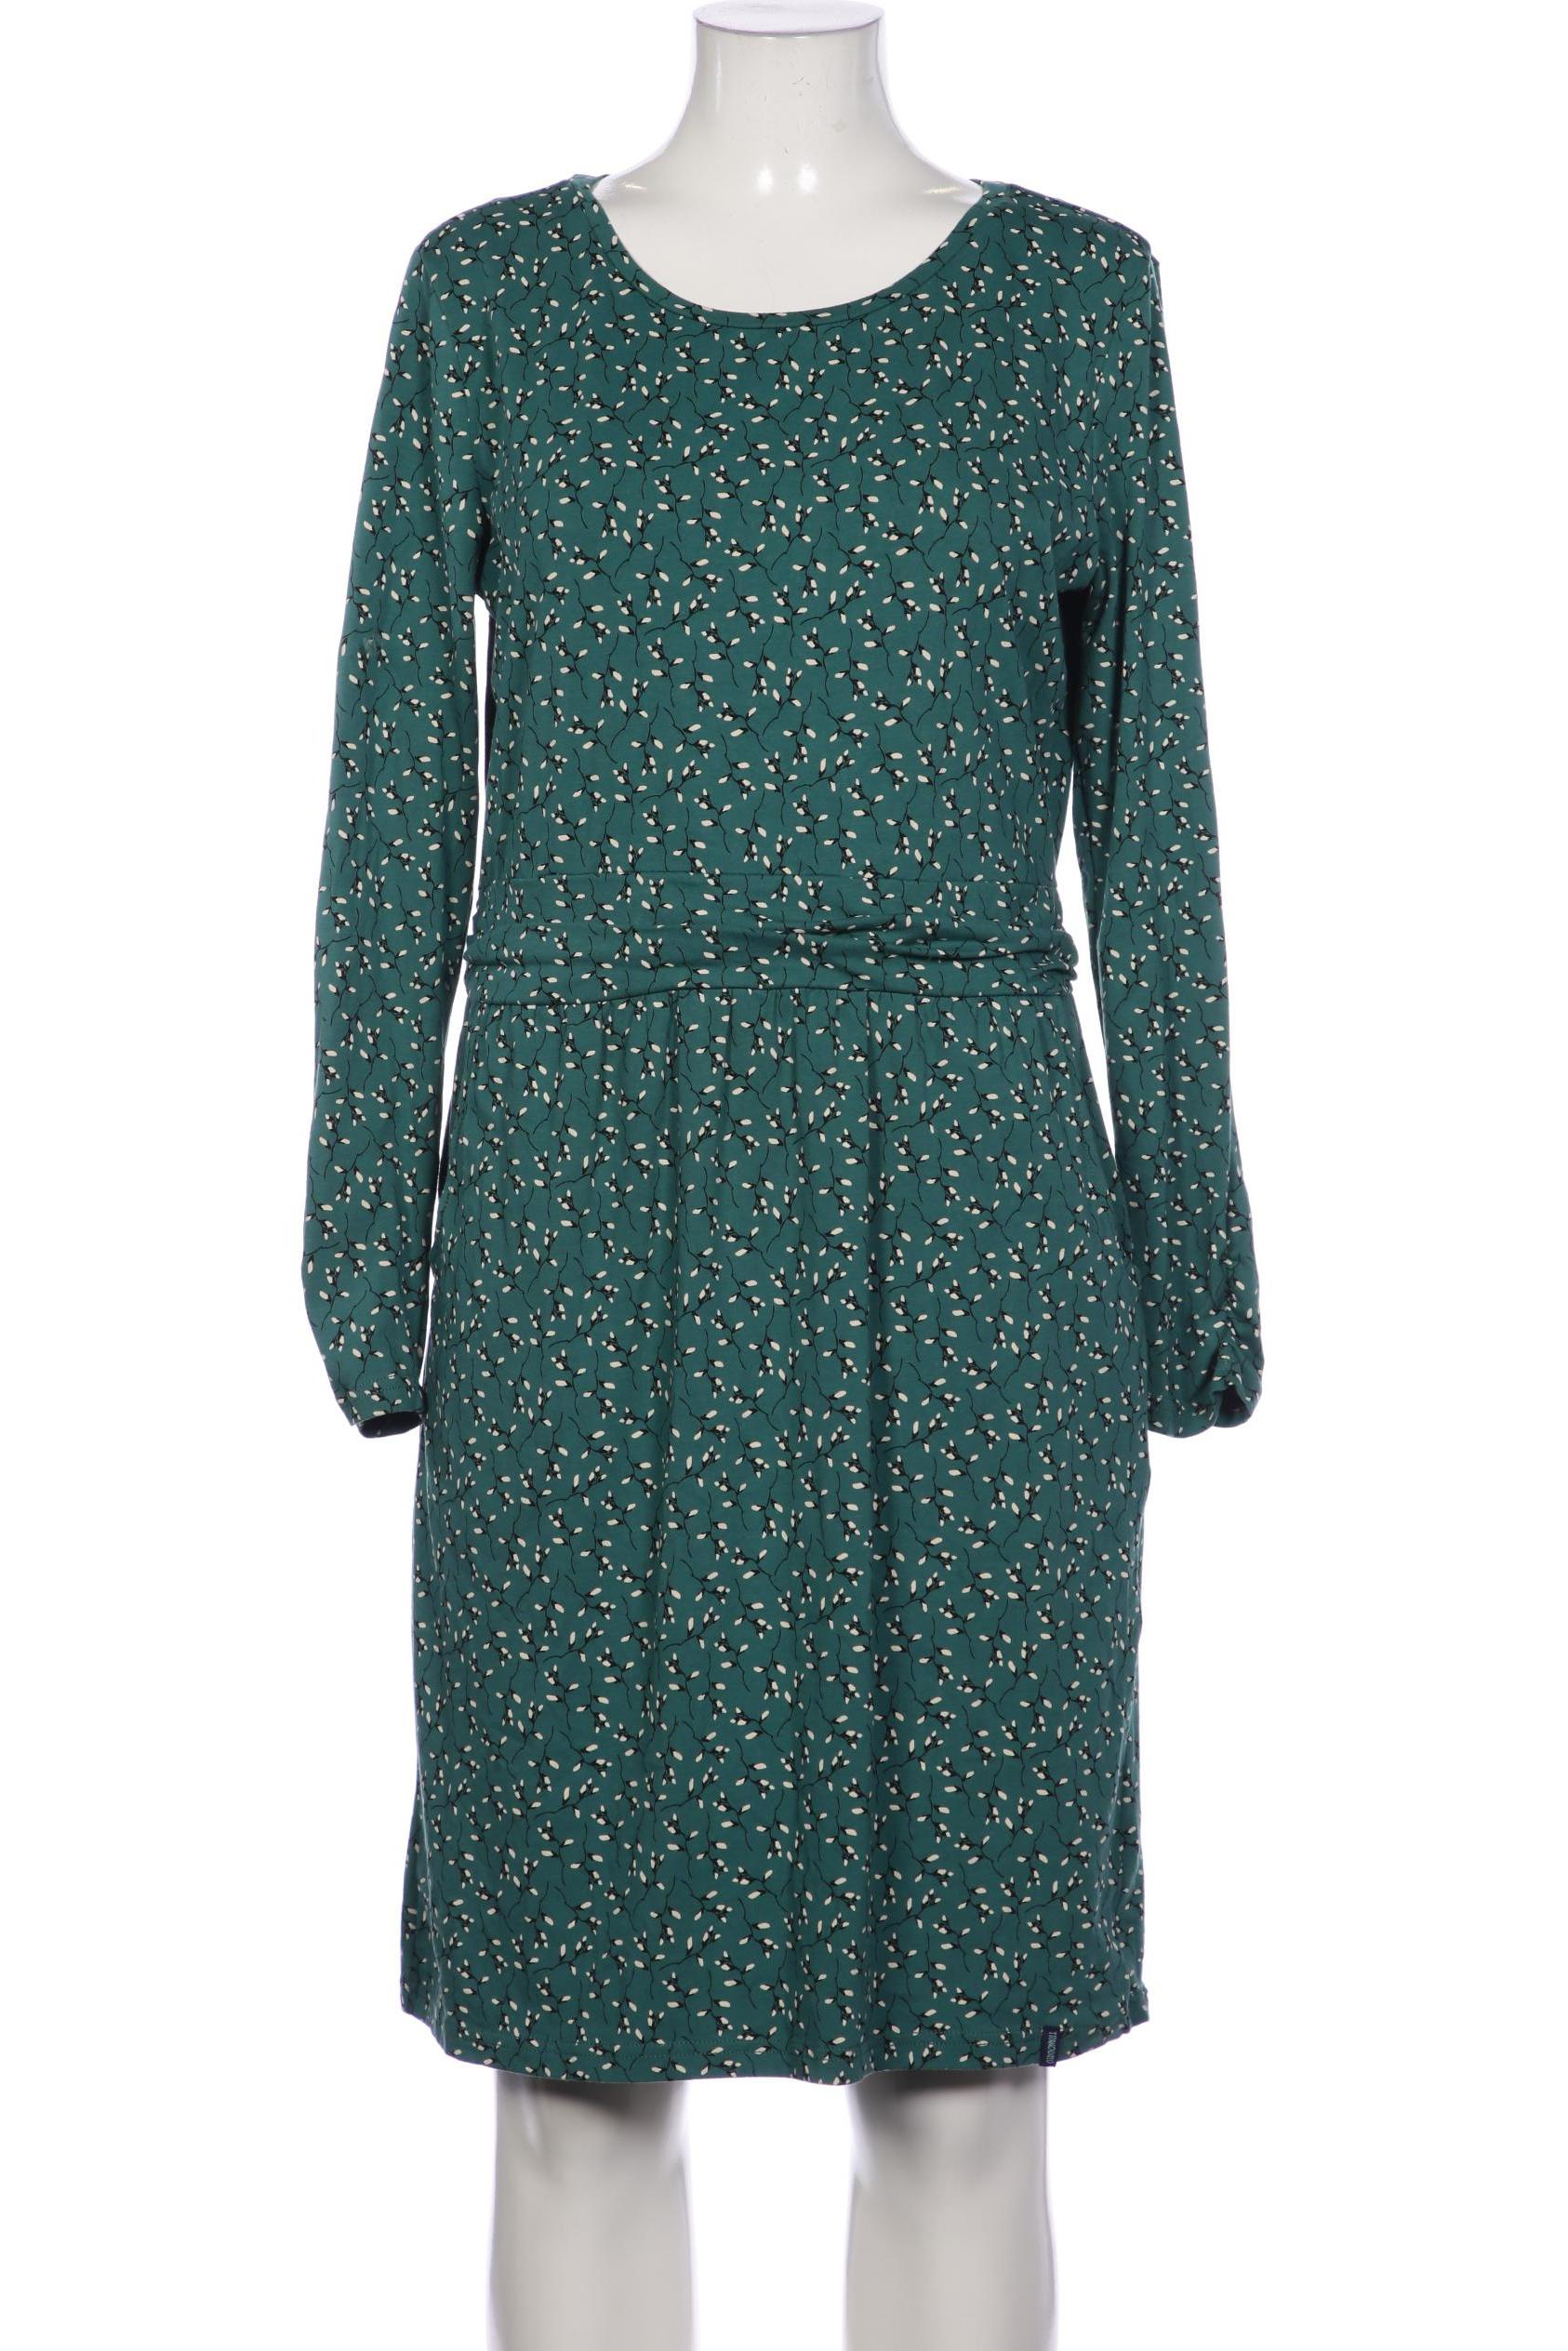 Tranquillo Damen Kleid, grün, Gr. 42 von TRANQUILLO